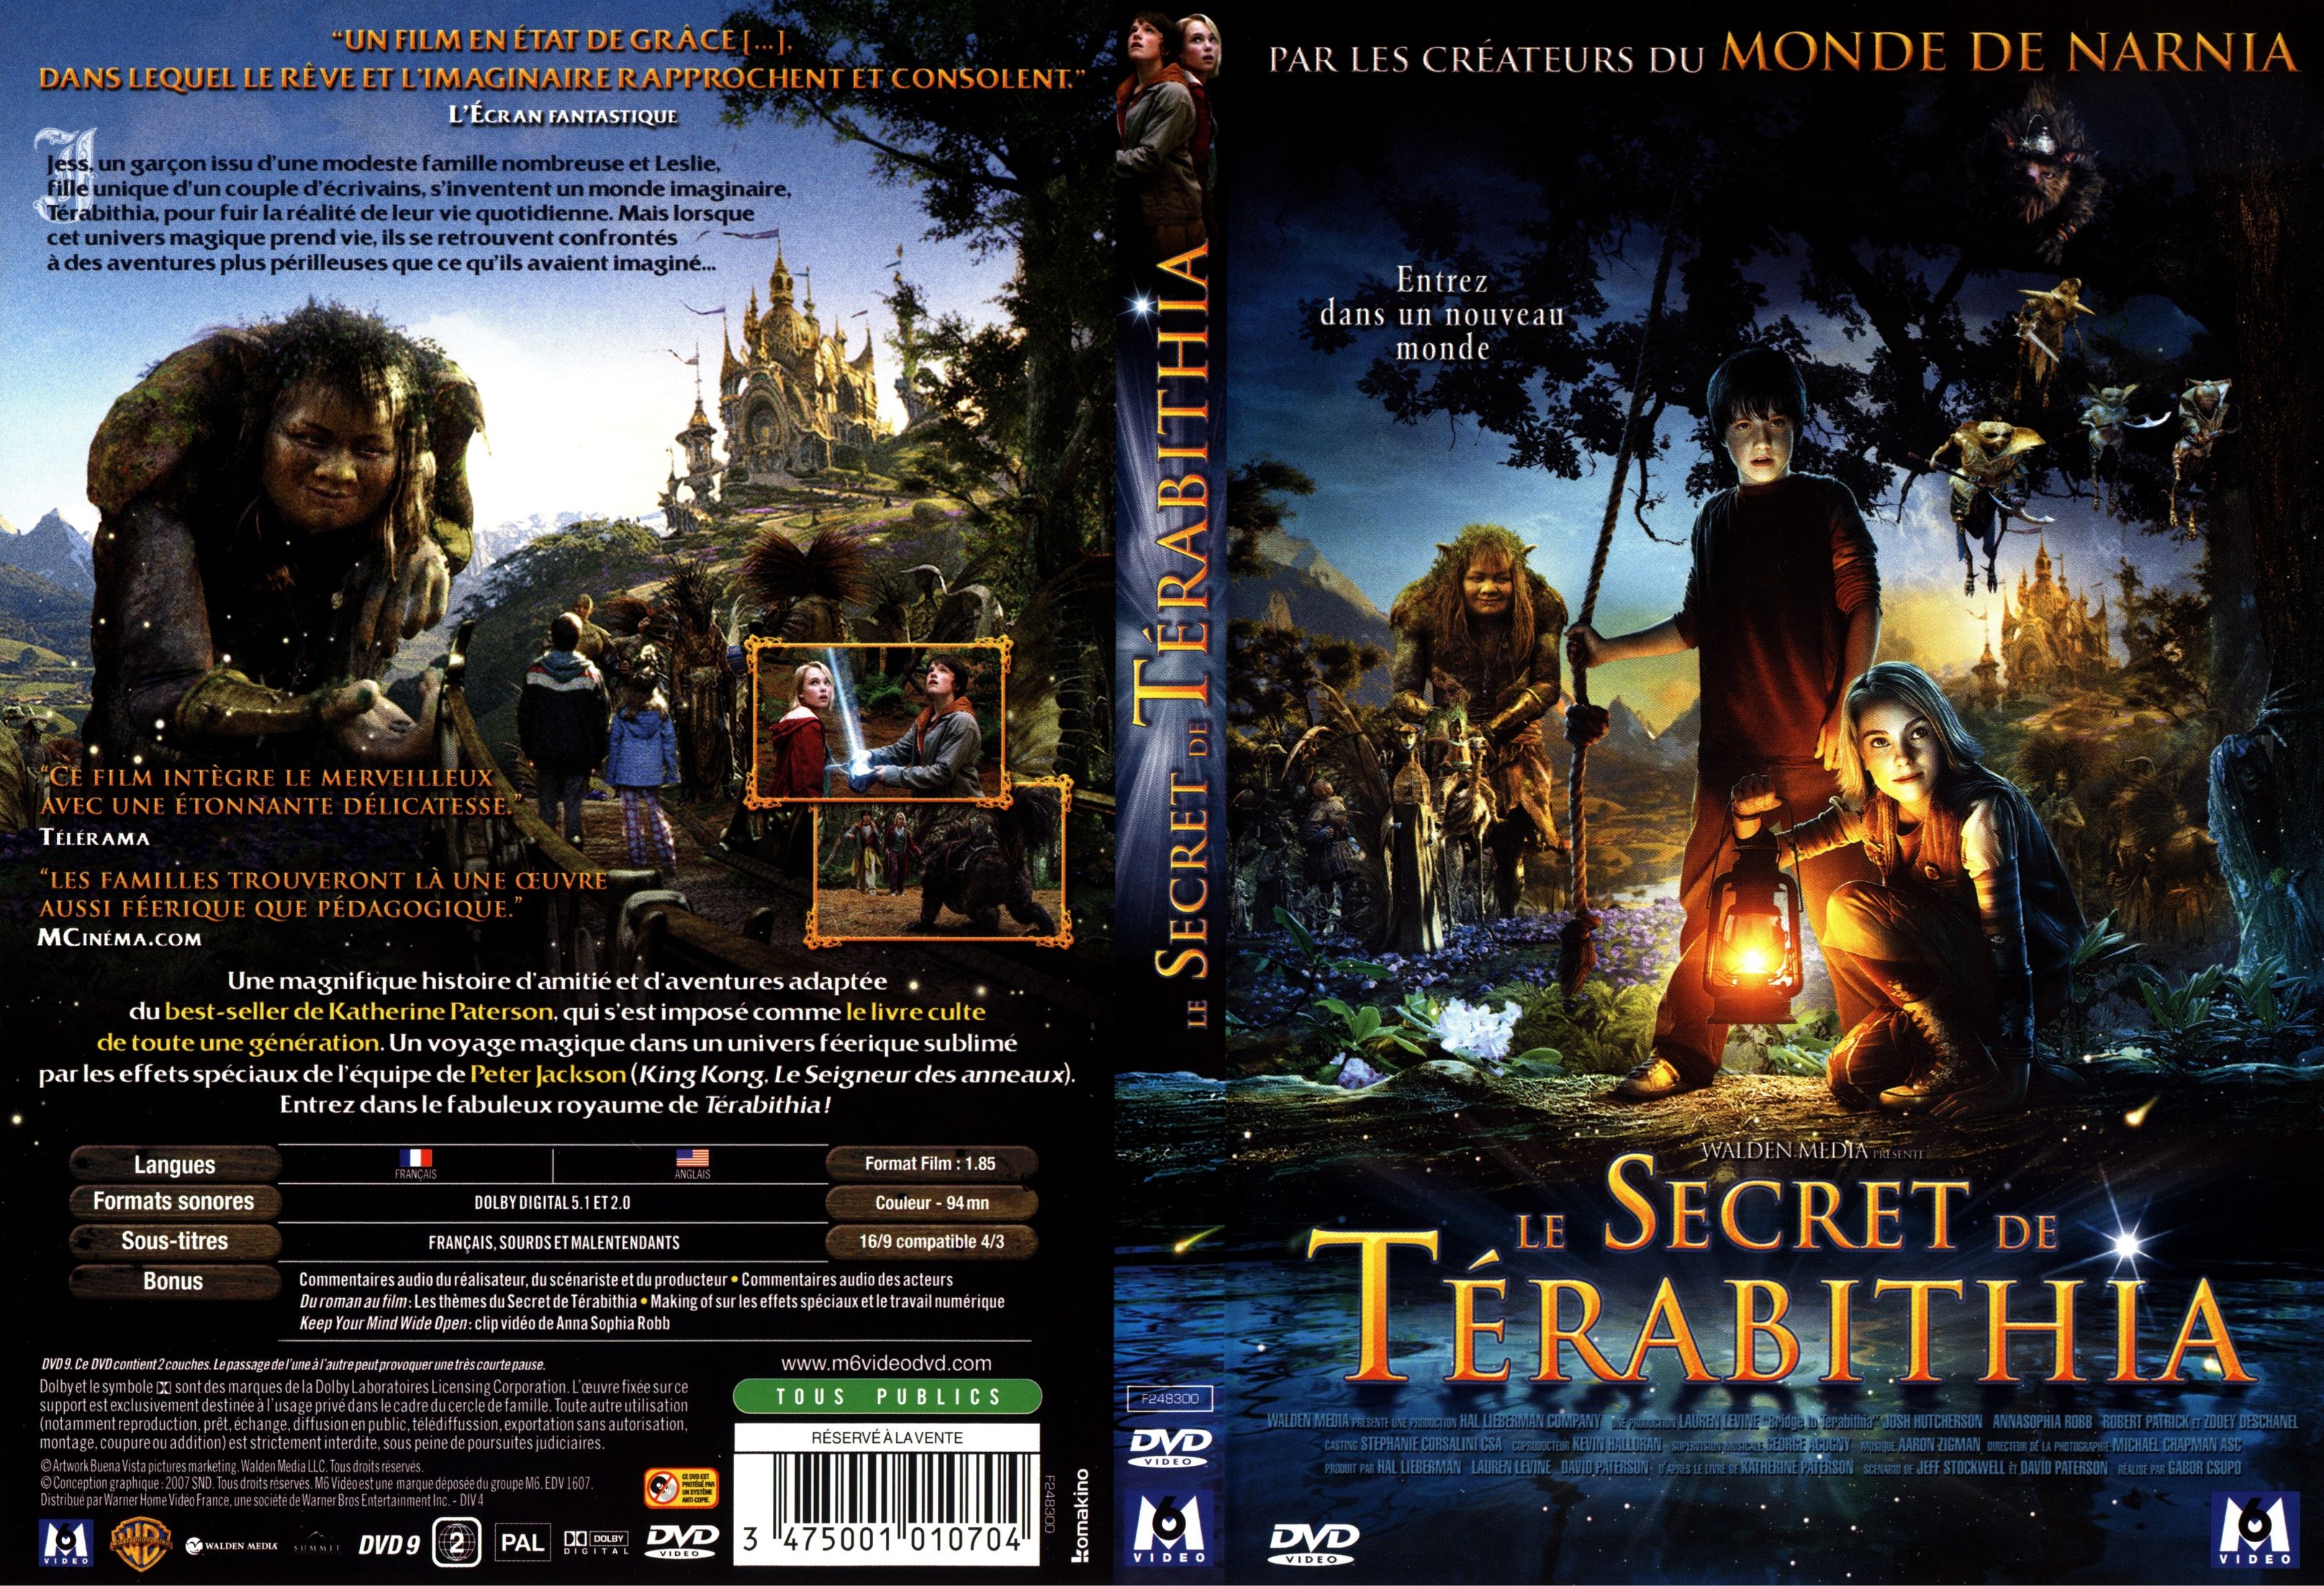 Jaquette DVD Le secret de terabithia v2